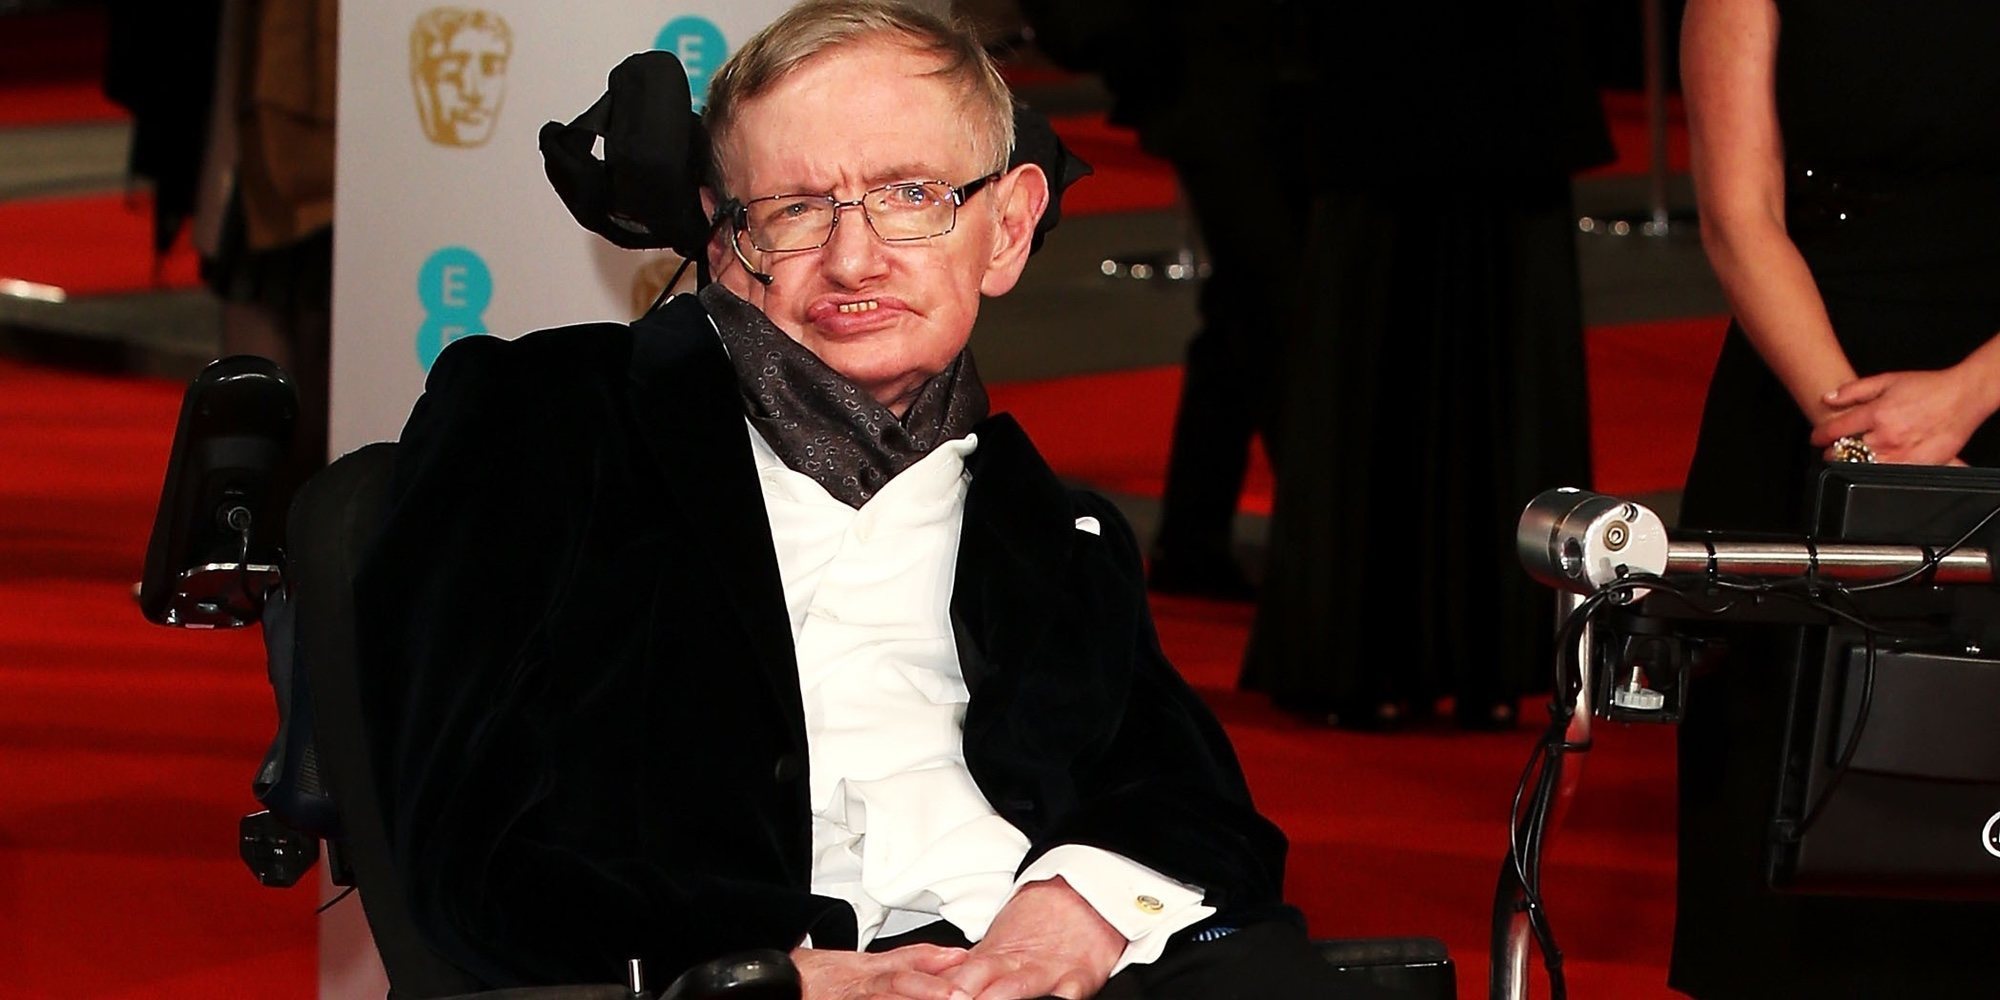 Muere Stephen Hawking, el físico teórico más conocido del mundo